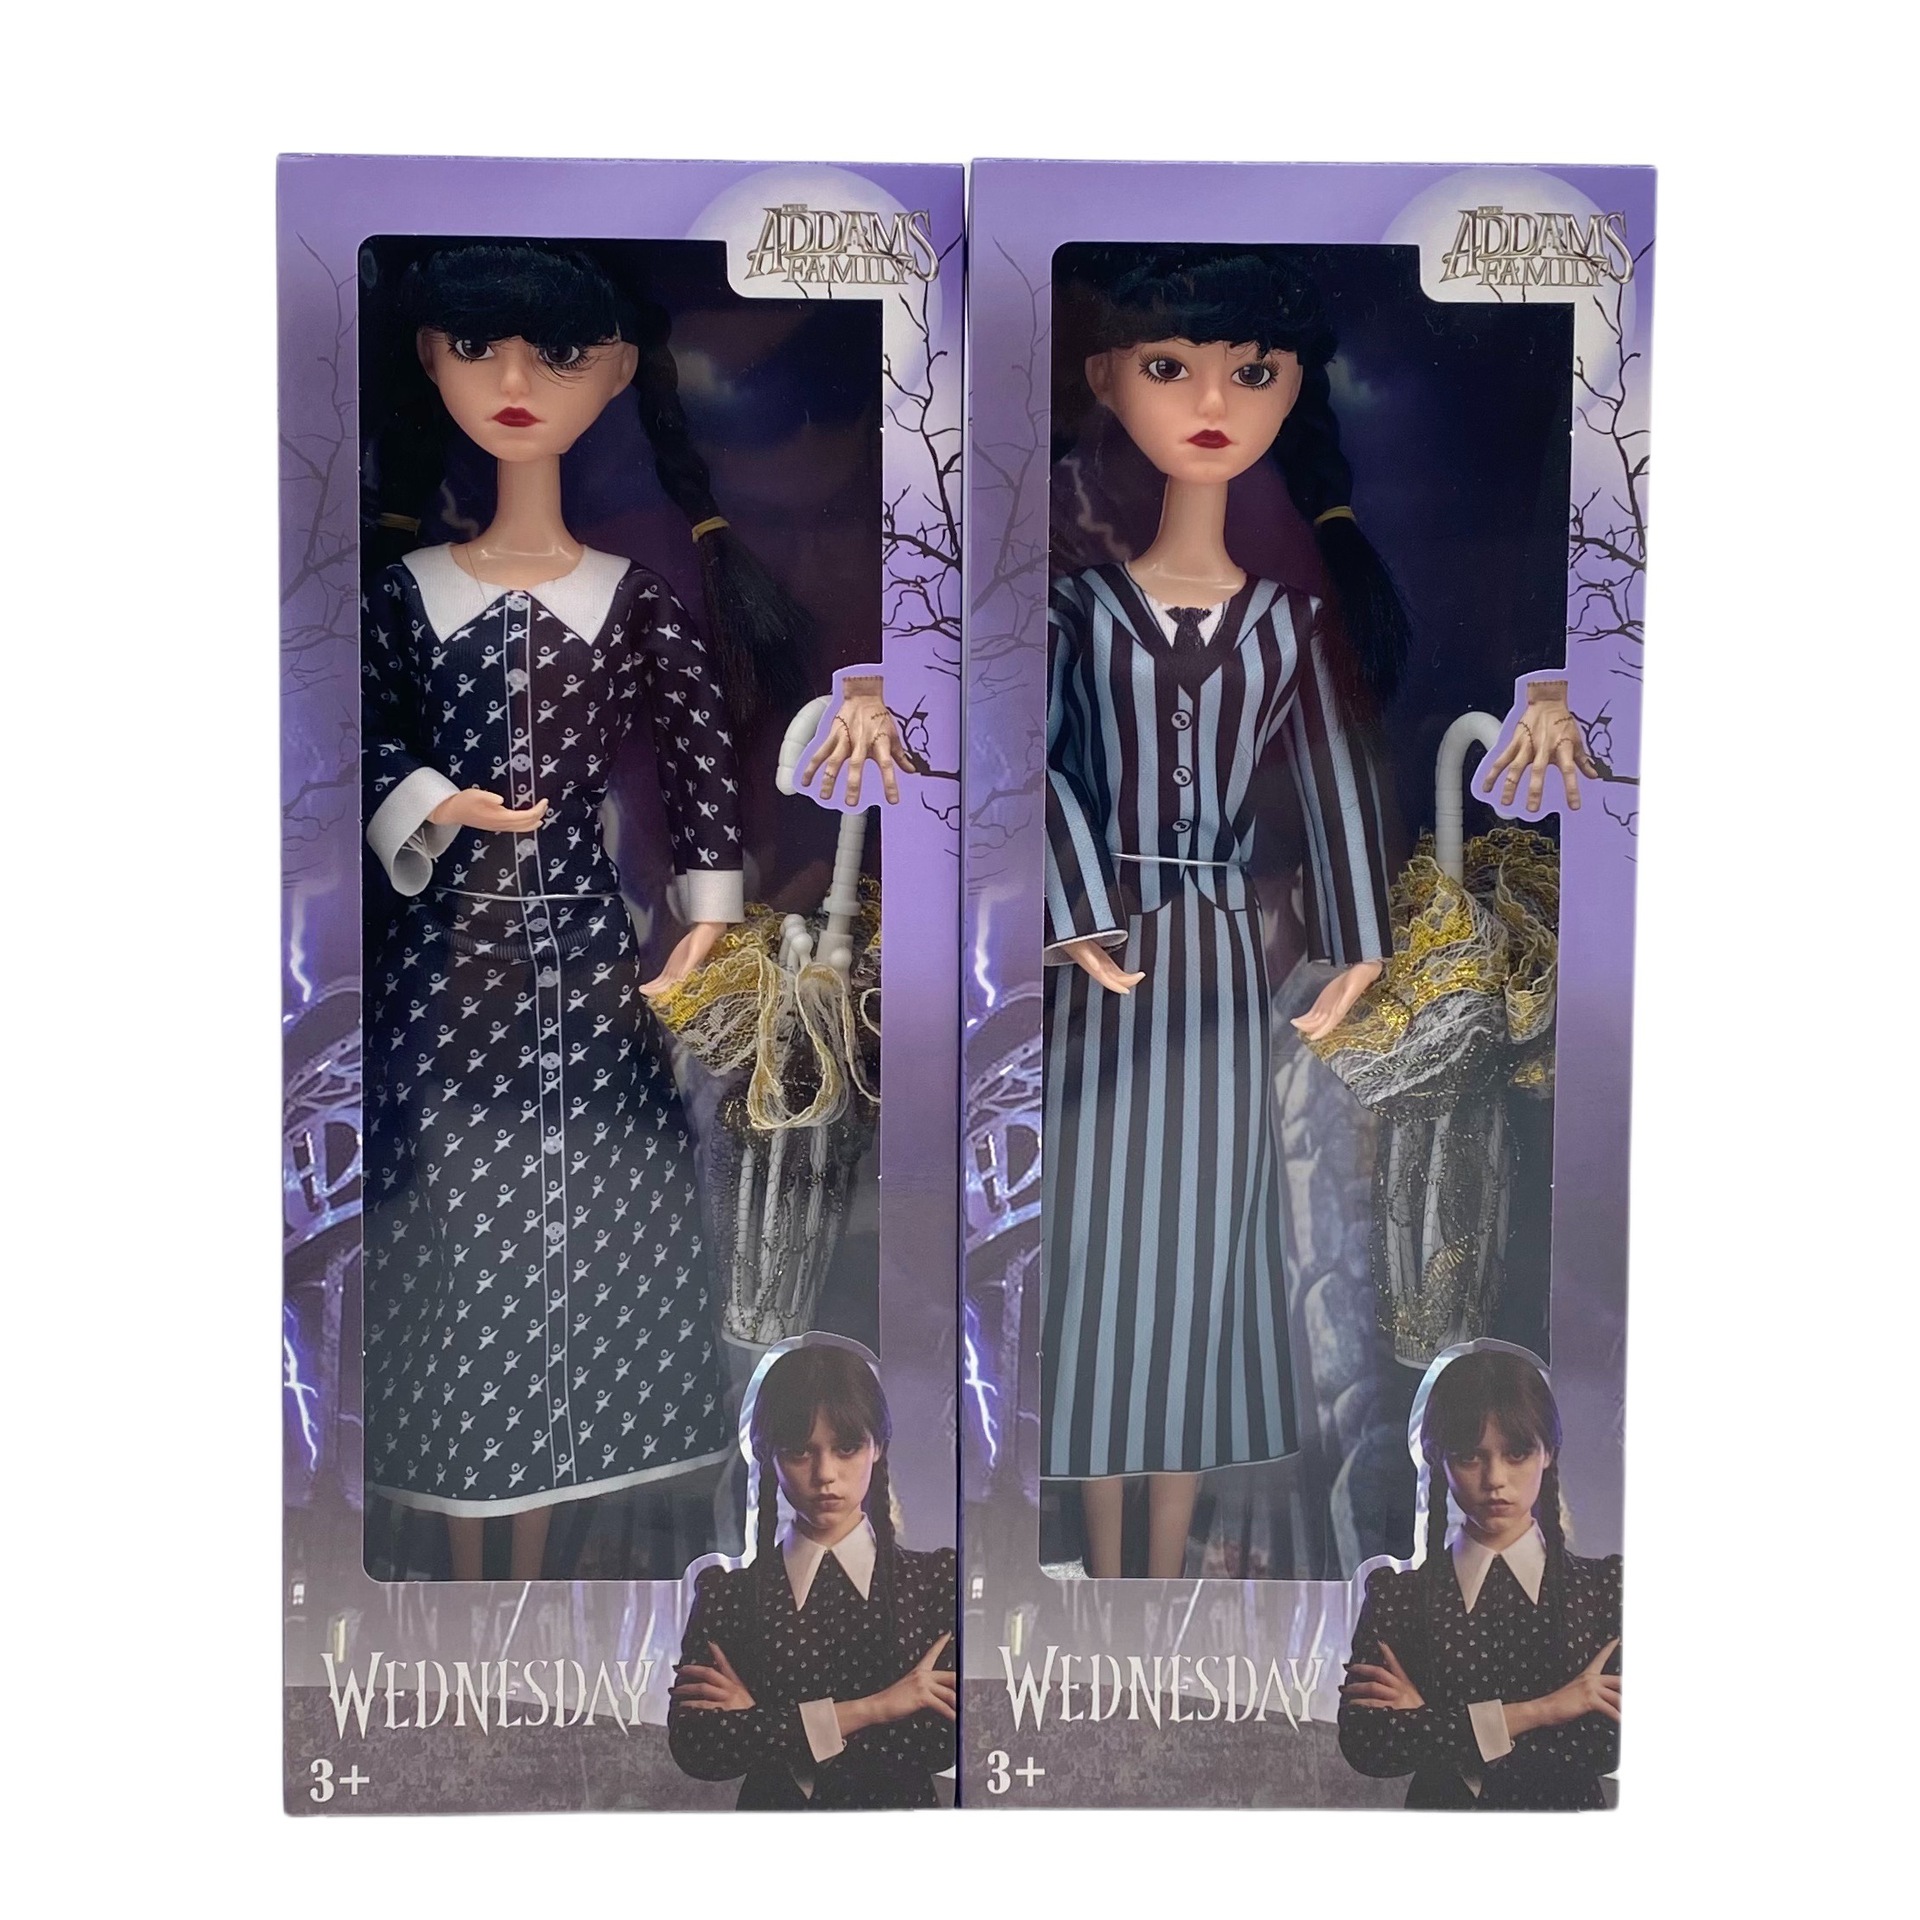 Loofamy Wednesday Addams Dolls, muñeca de plástico de la familia Addams, 11,5 pulgadas, vestido a rayas de manga corta, regalos de cumpleaños para fanáticos de las niñas